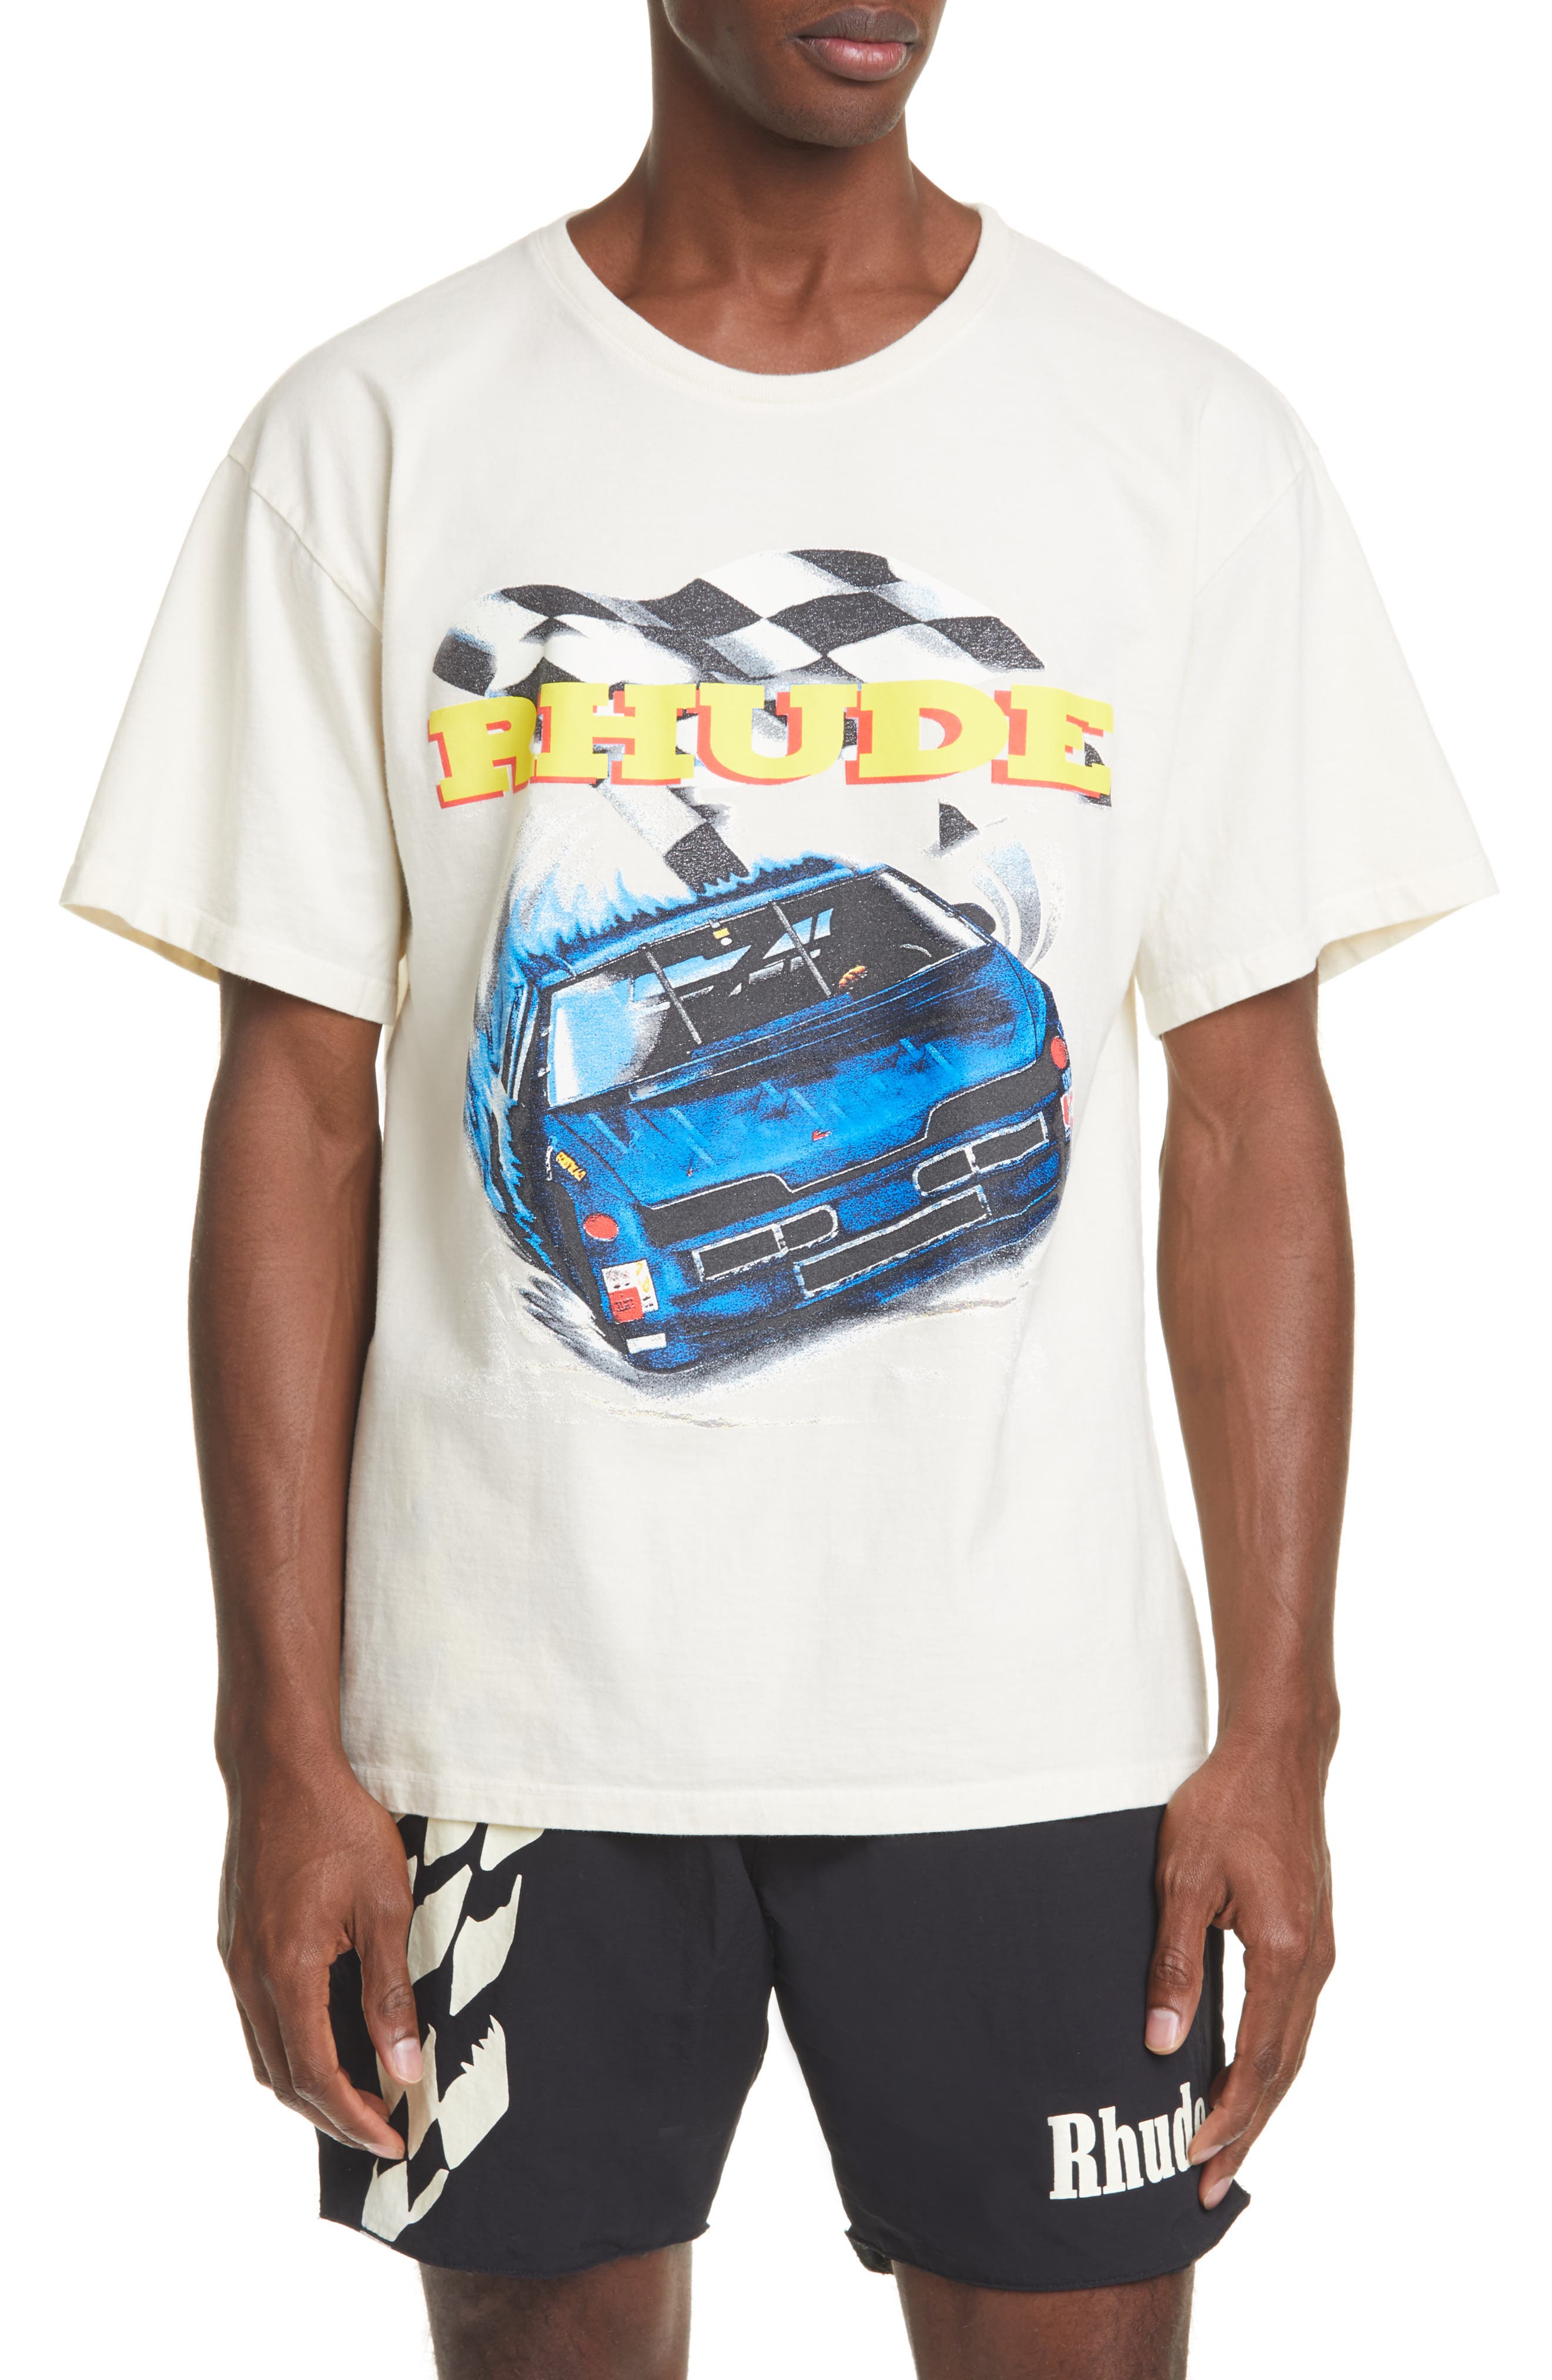 NASCAR Racing T Shirt